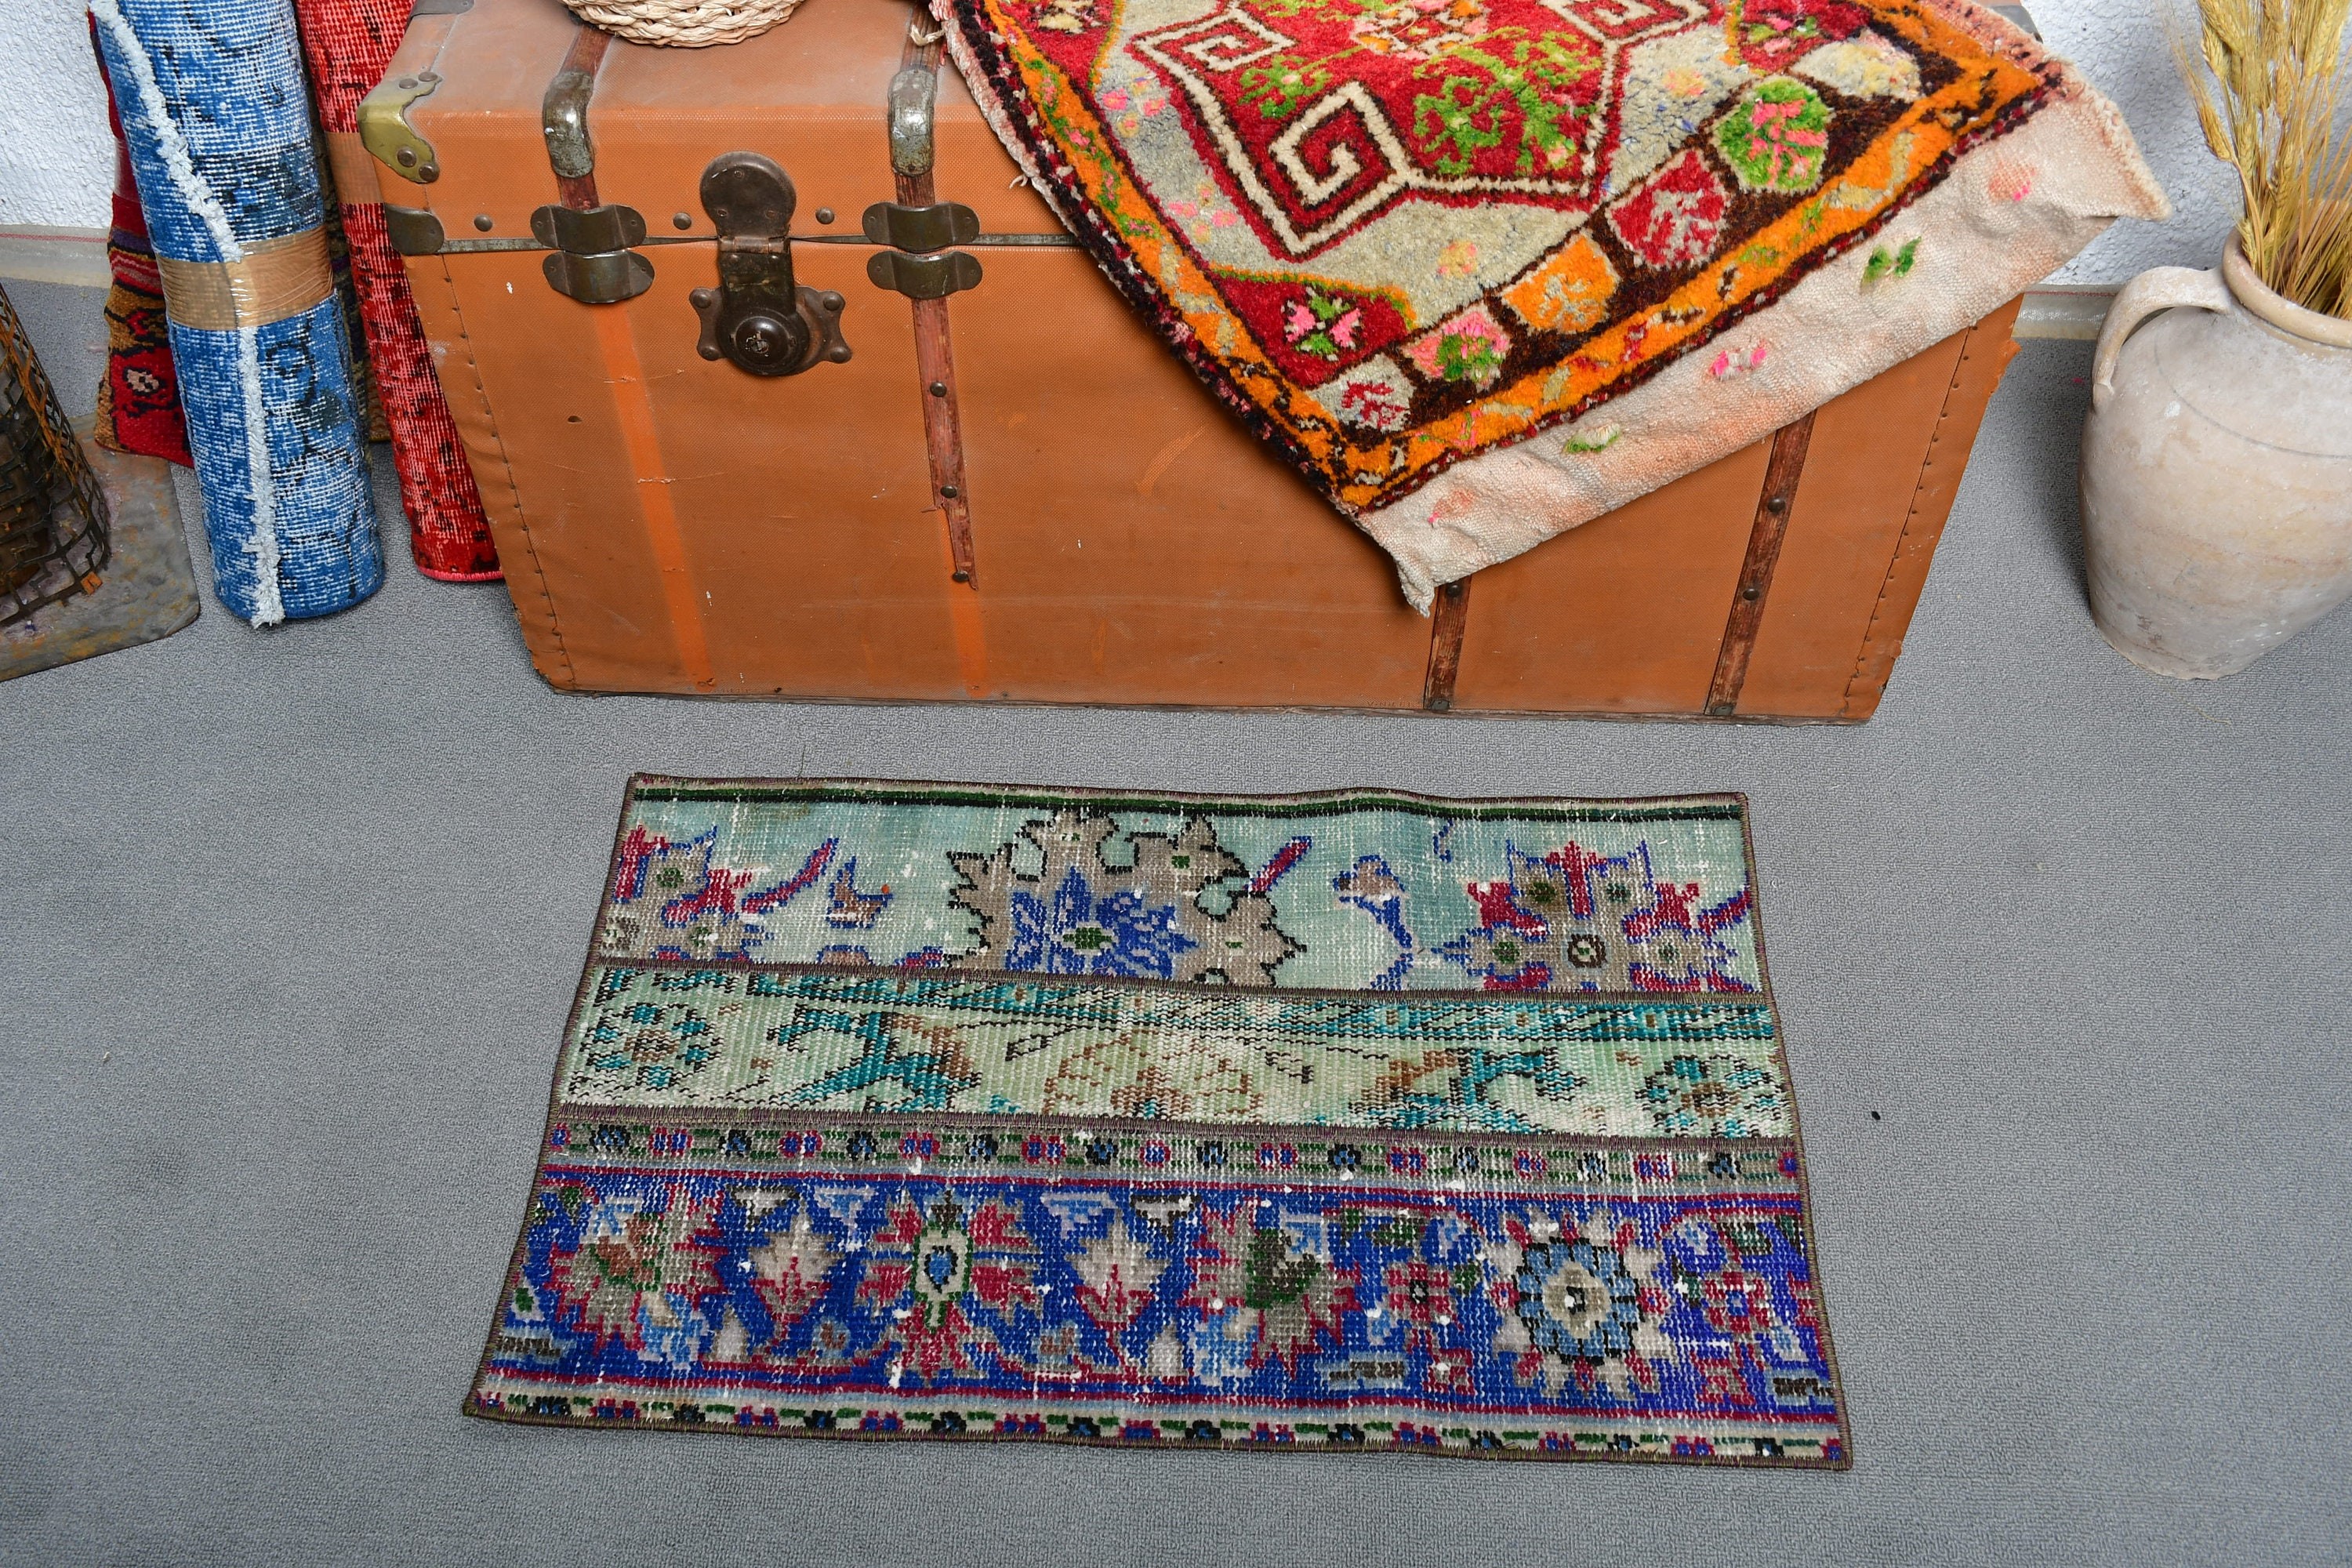 Türk Halısı, 1.6x2.6 ft Küçük Halı, Araba Paspas Halıları, Giriş Halısı, Vintage Halı, Mavi Yatak Odası Halısı, Soğuk Halı, Duvara Asma Halıları, Mutfak Halısı